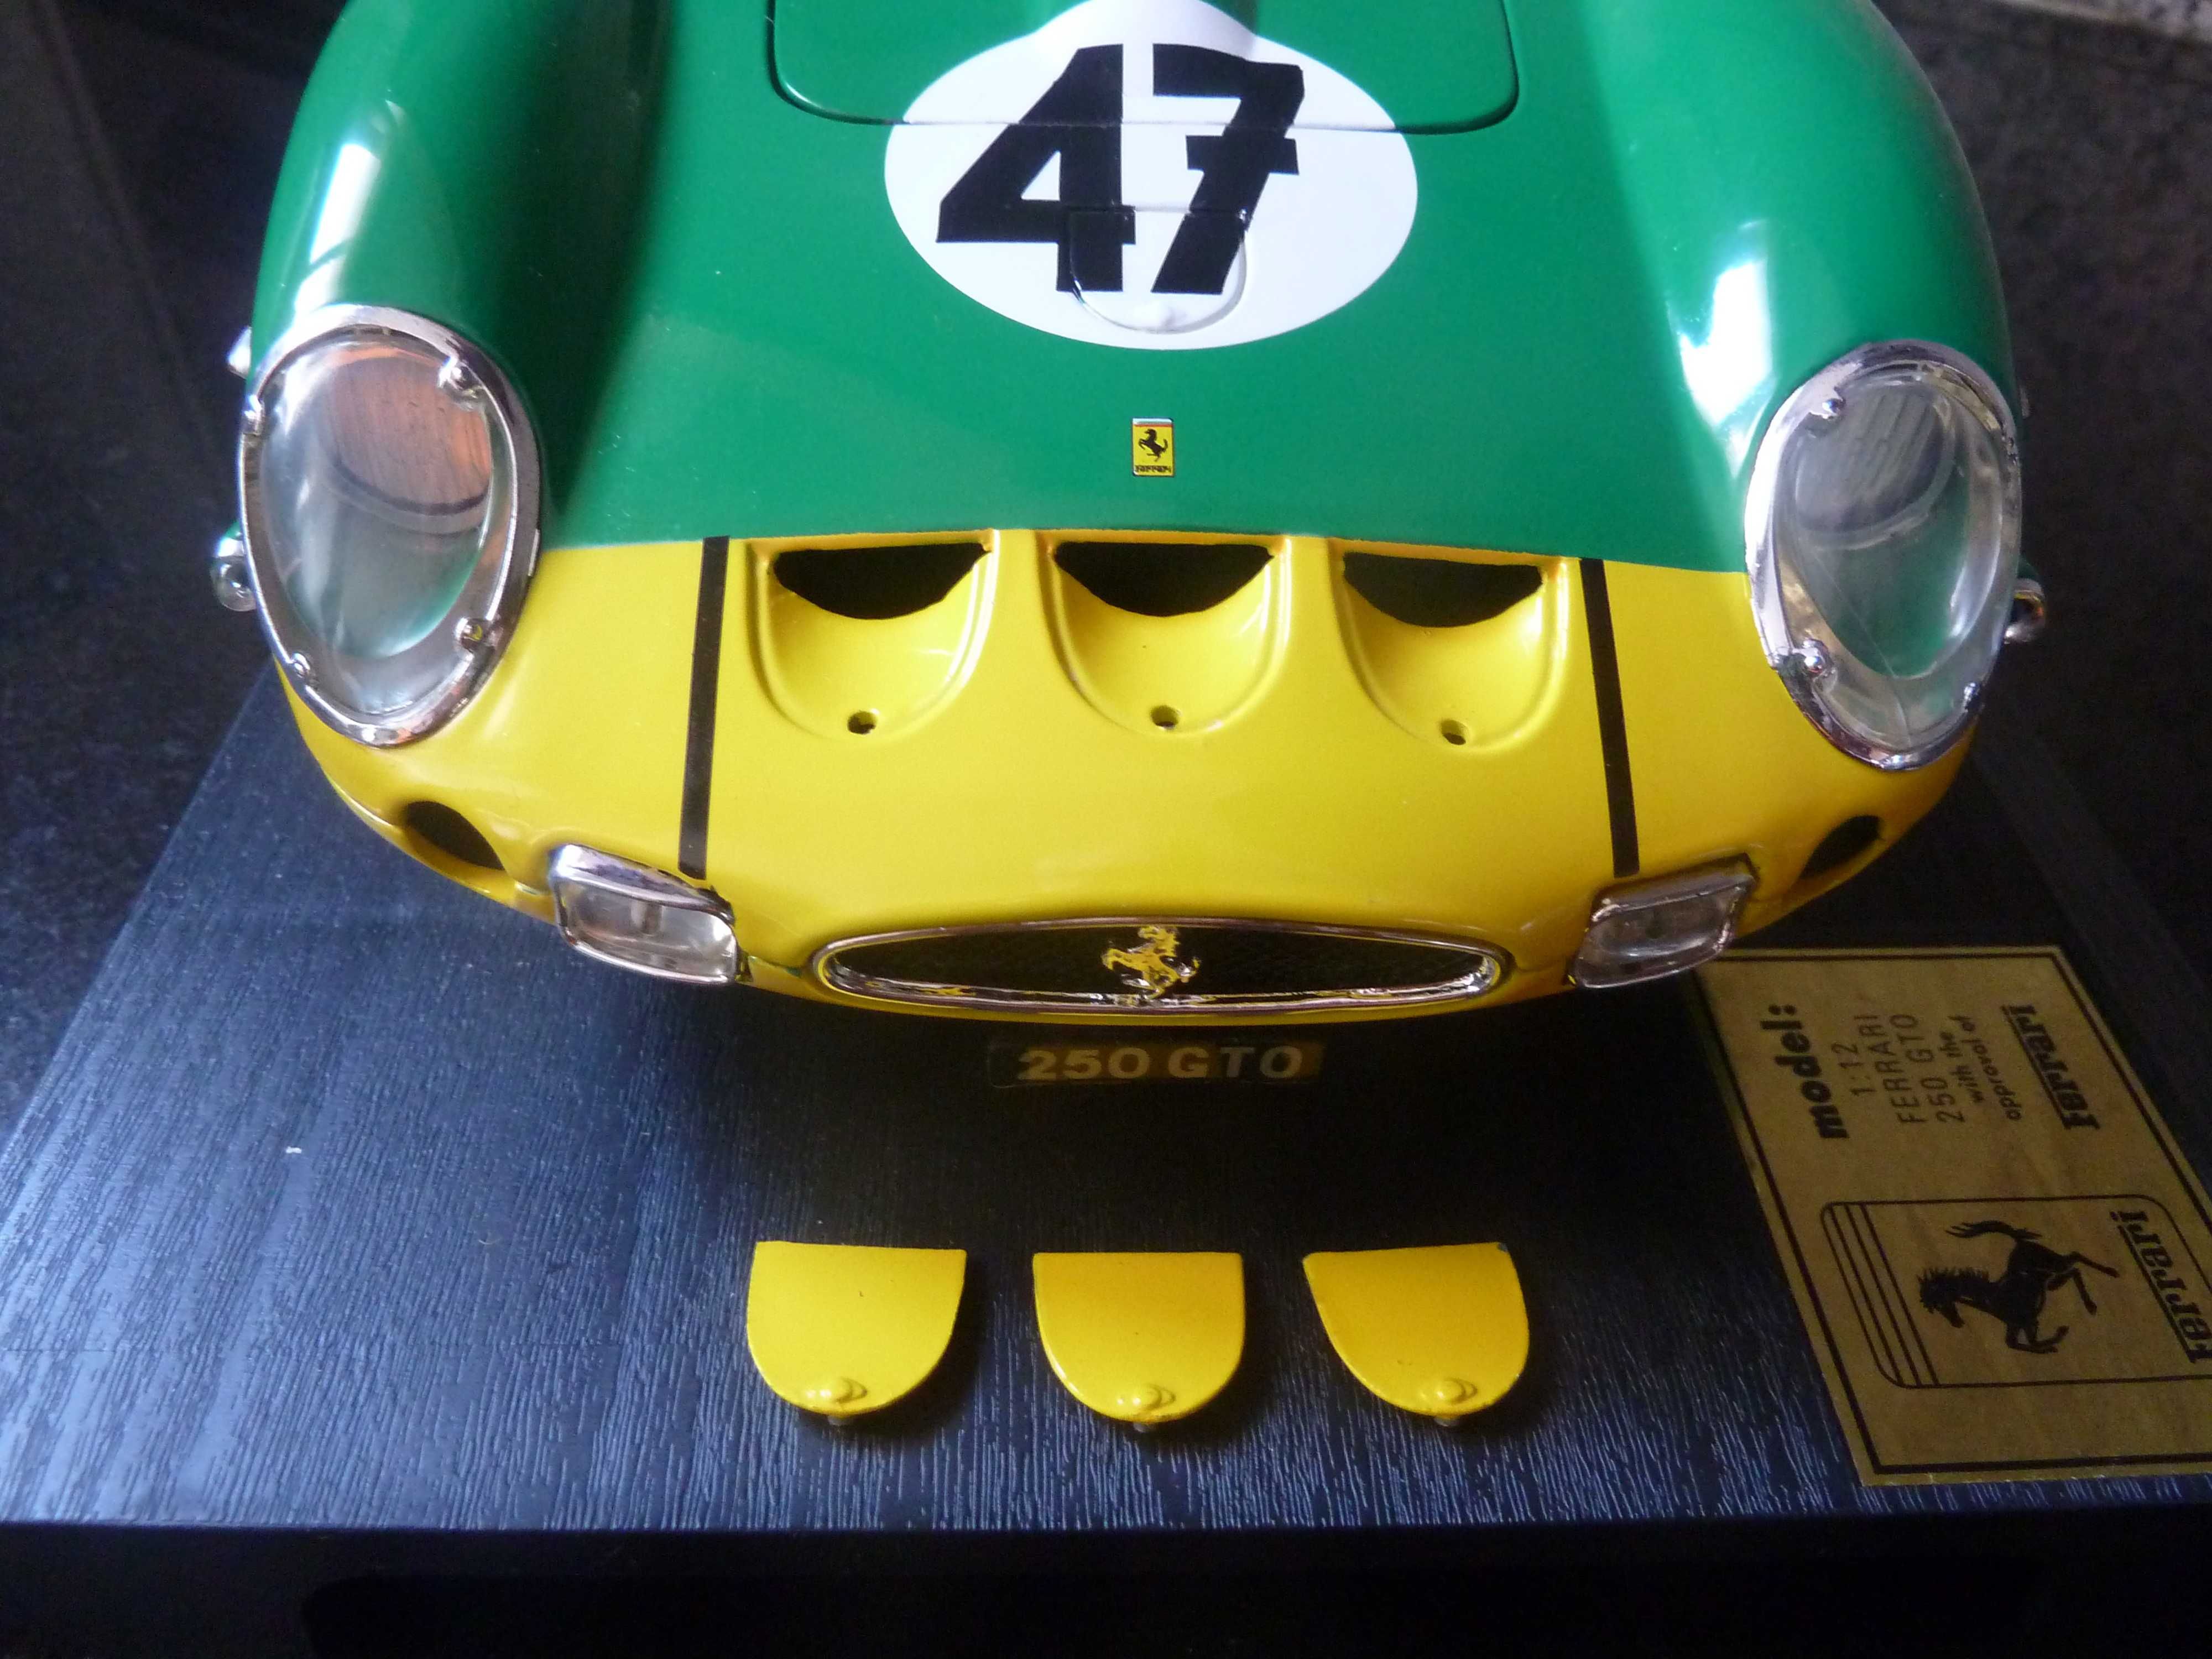 1:12 Revell, Ferrari 250 GTO, 1962, AutoArt, Minichamps